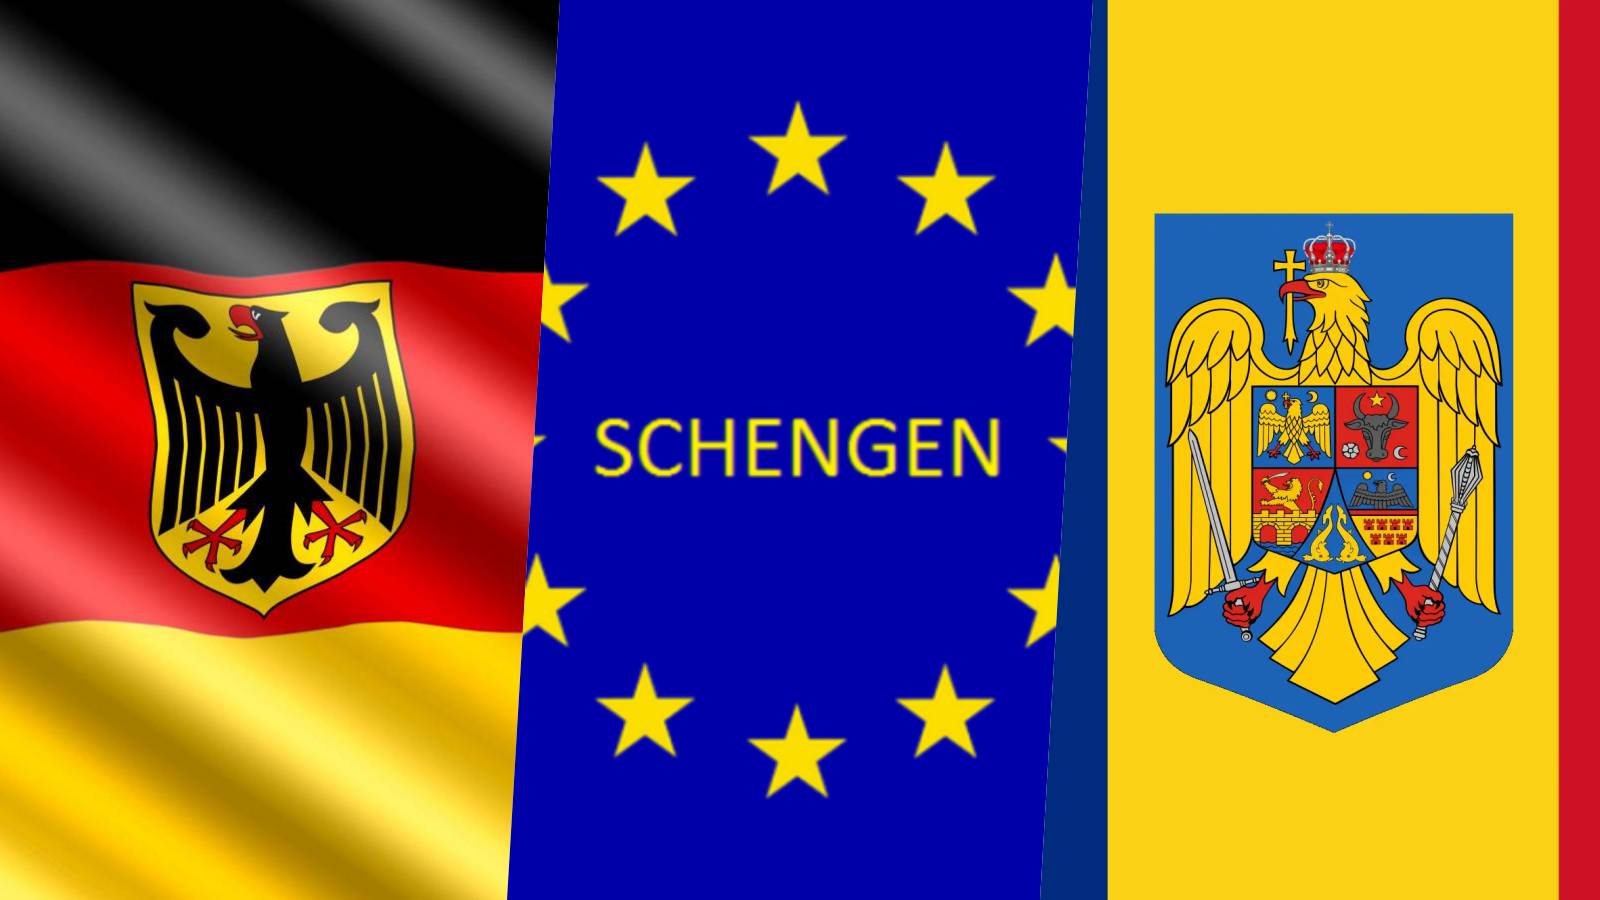 Germania Masurile Oficiale ULTIM MOMENT fac INUTILA Aderarea Romaniei Schengen